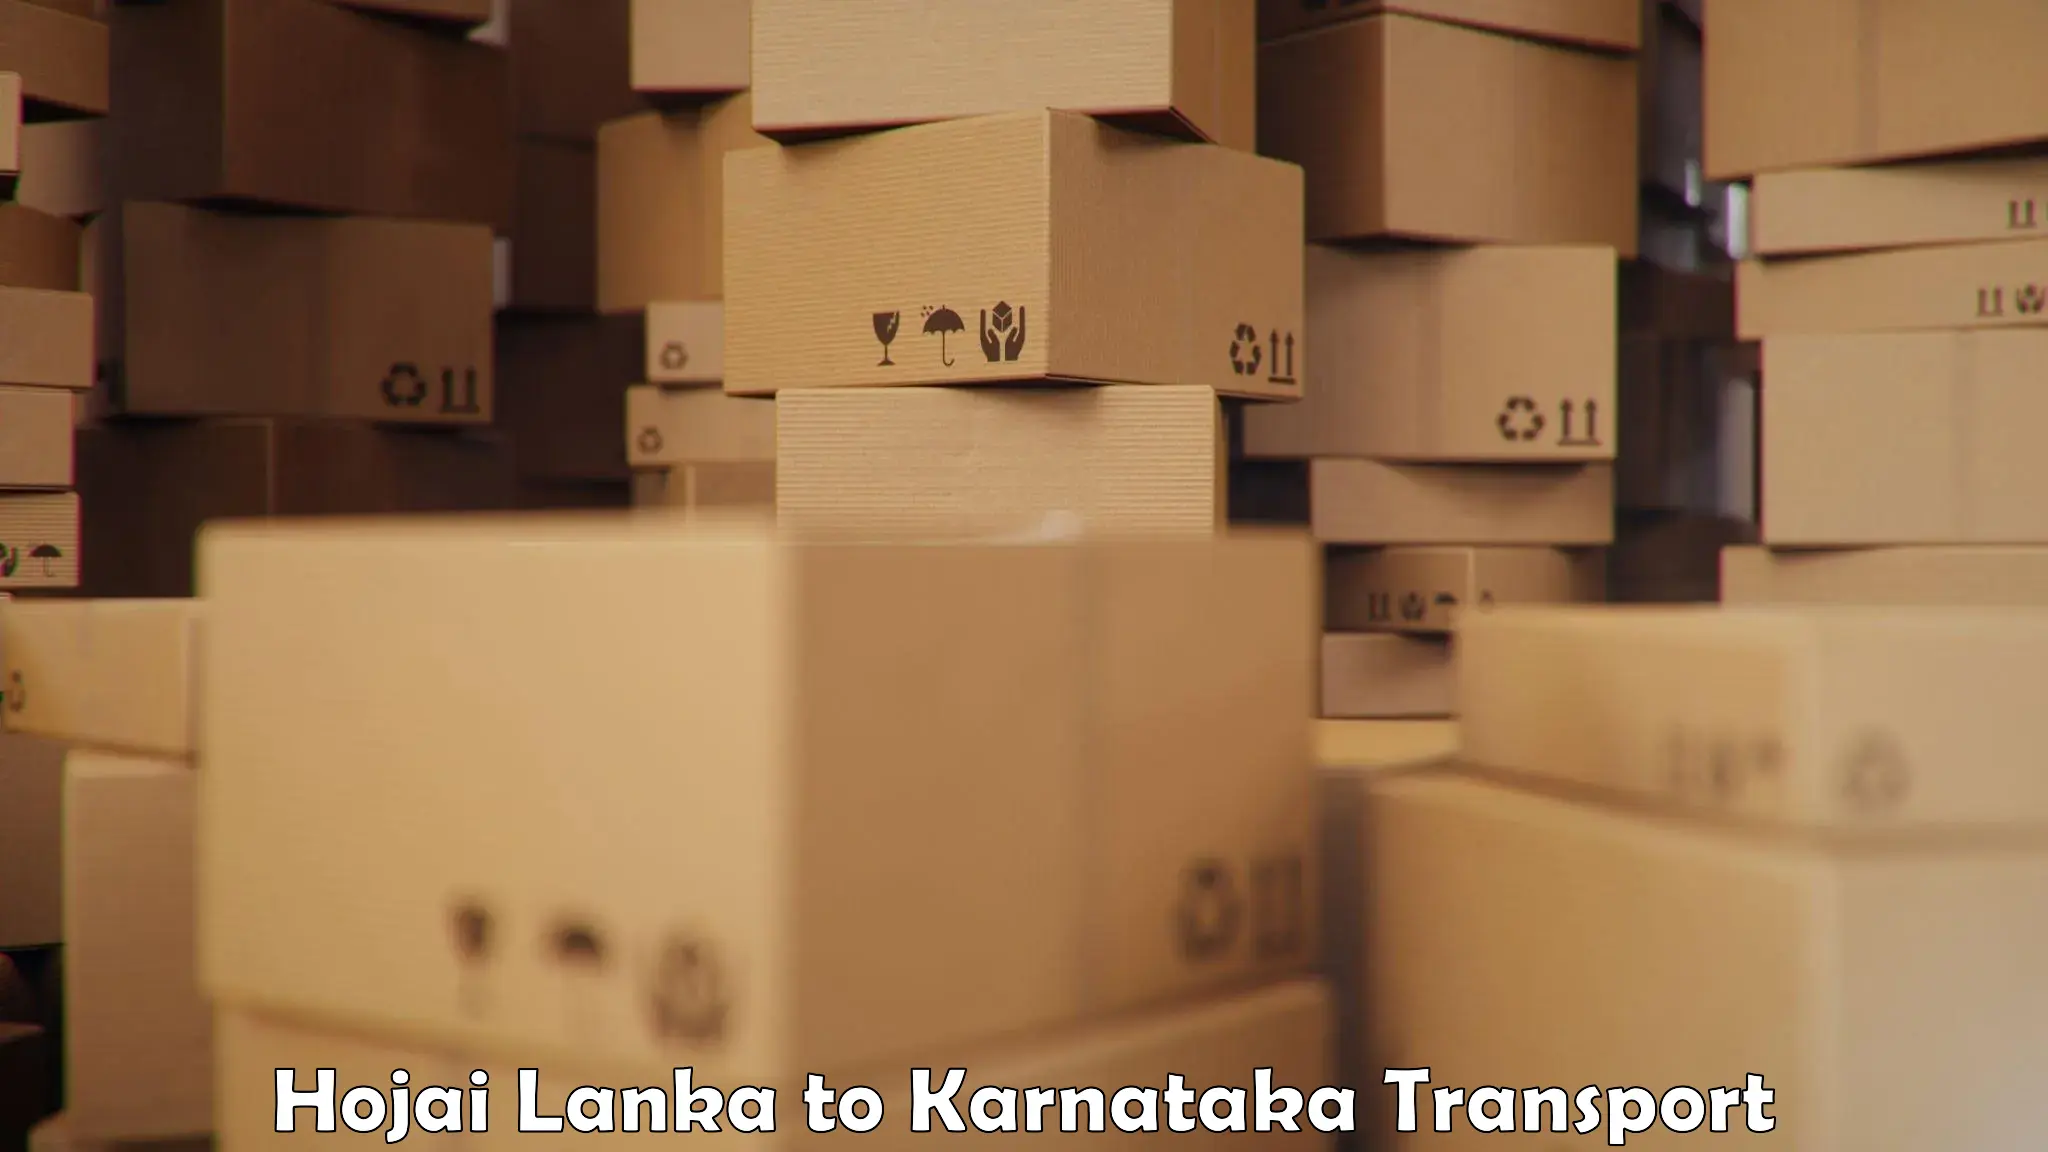 Furniture transport service Hojai Lanka to Madhugiri